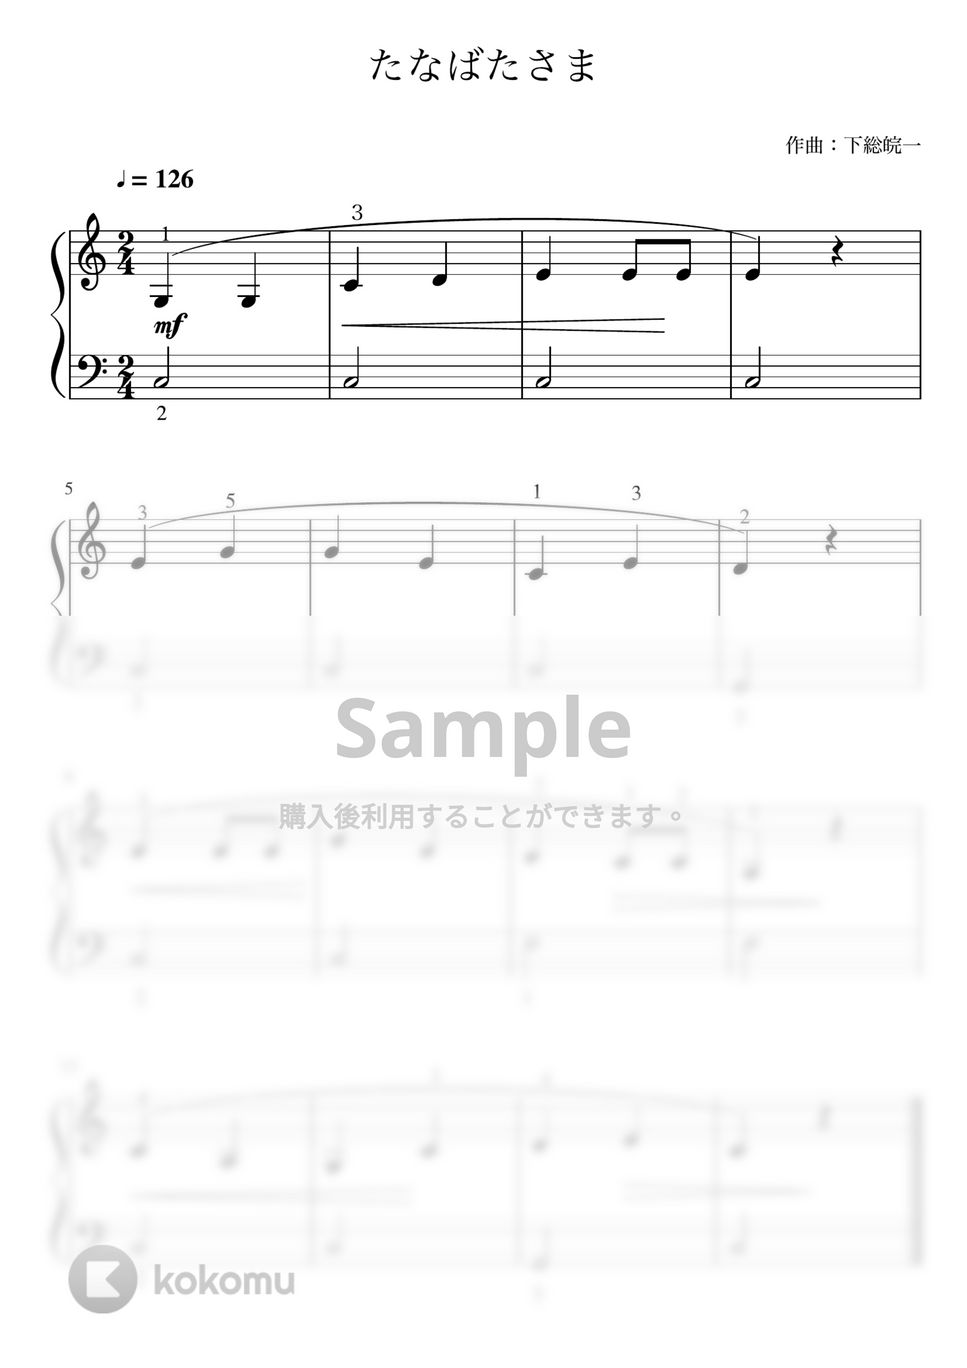 たなばたさま (Cdur・ピアノソロ入門~初級・指番号付き) by pfkaori